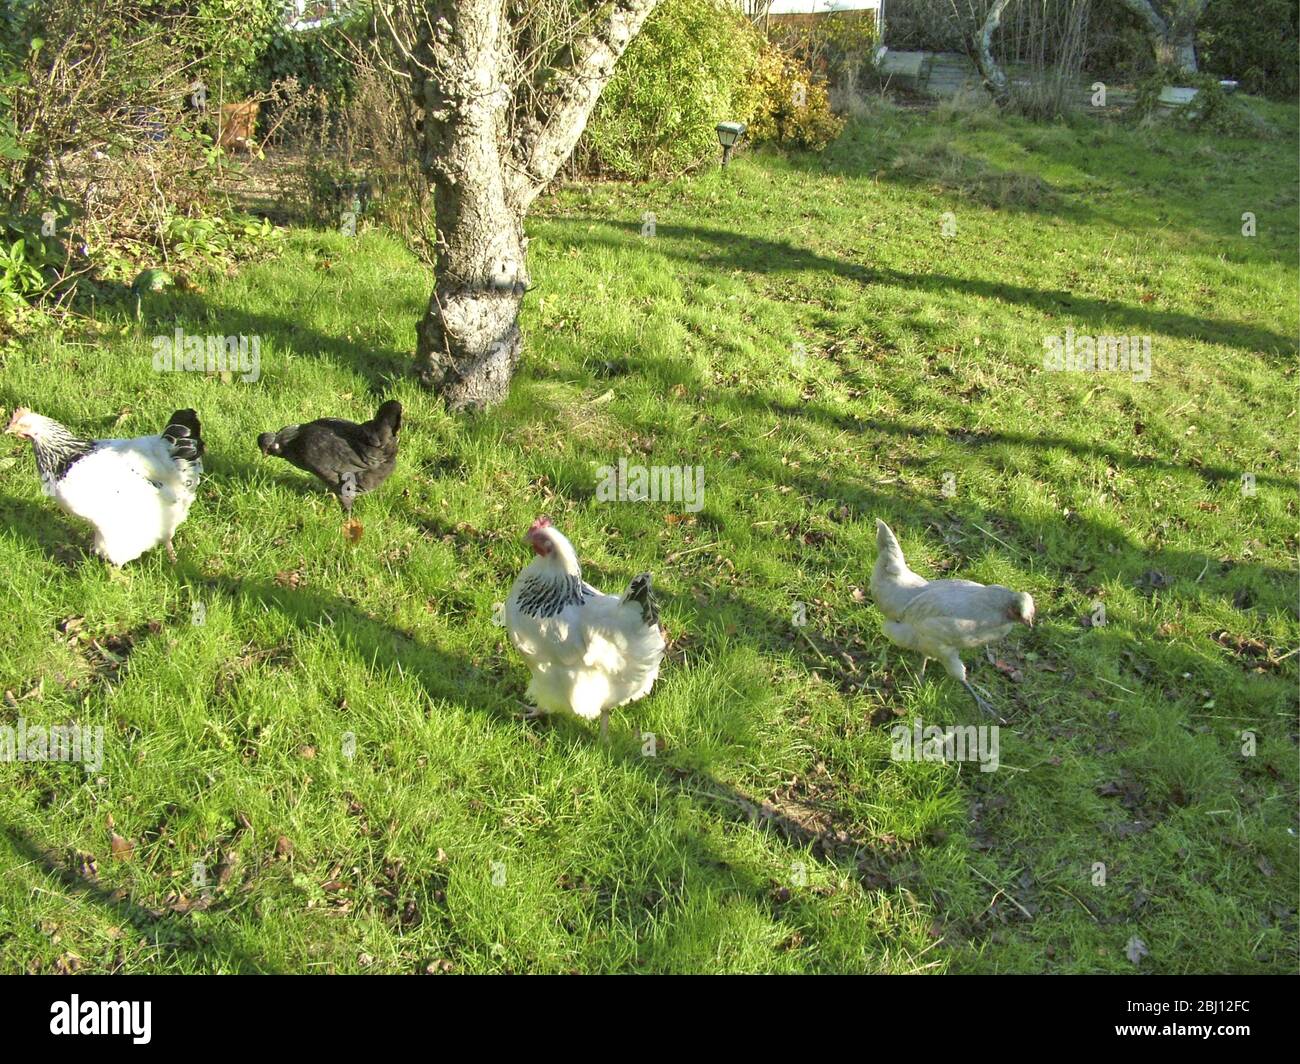 Pollos corriendo gratis en el jardín - Foto de stock